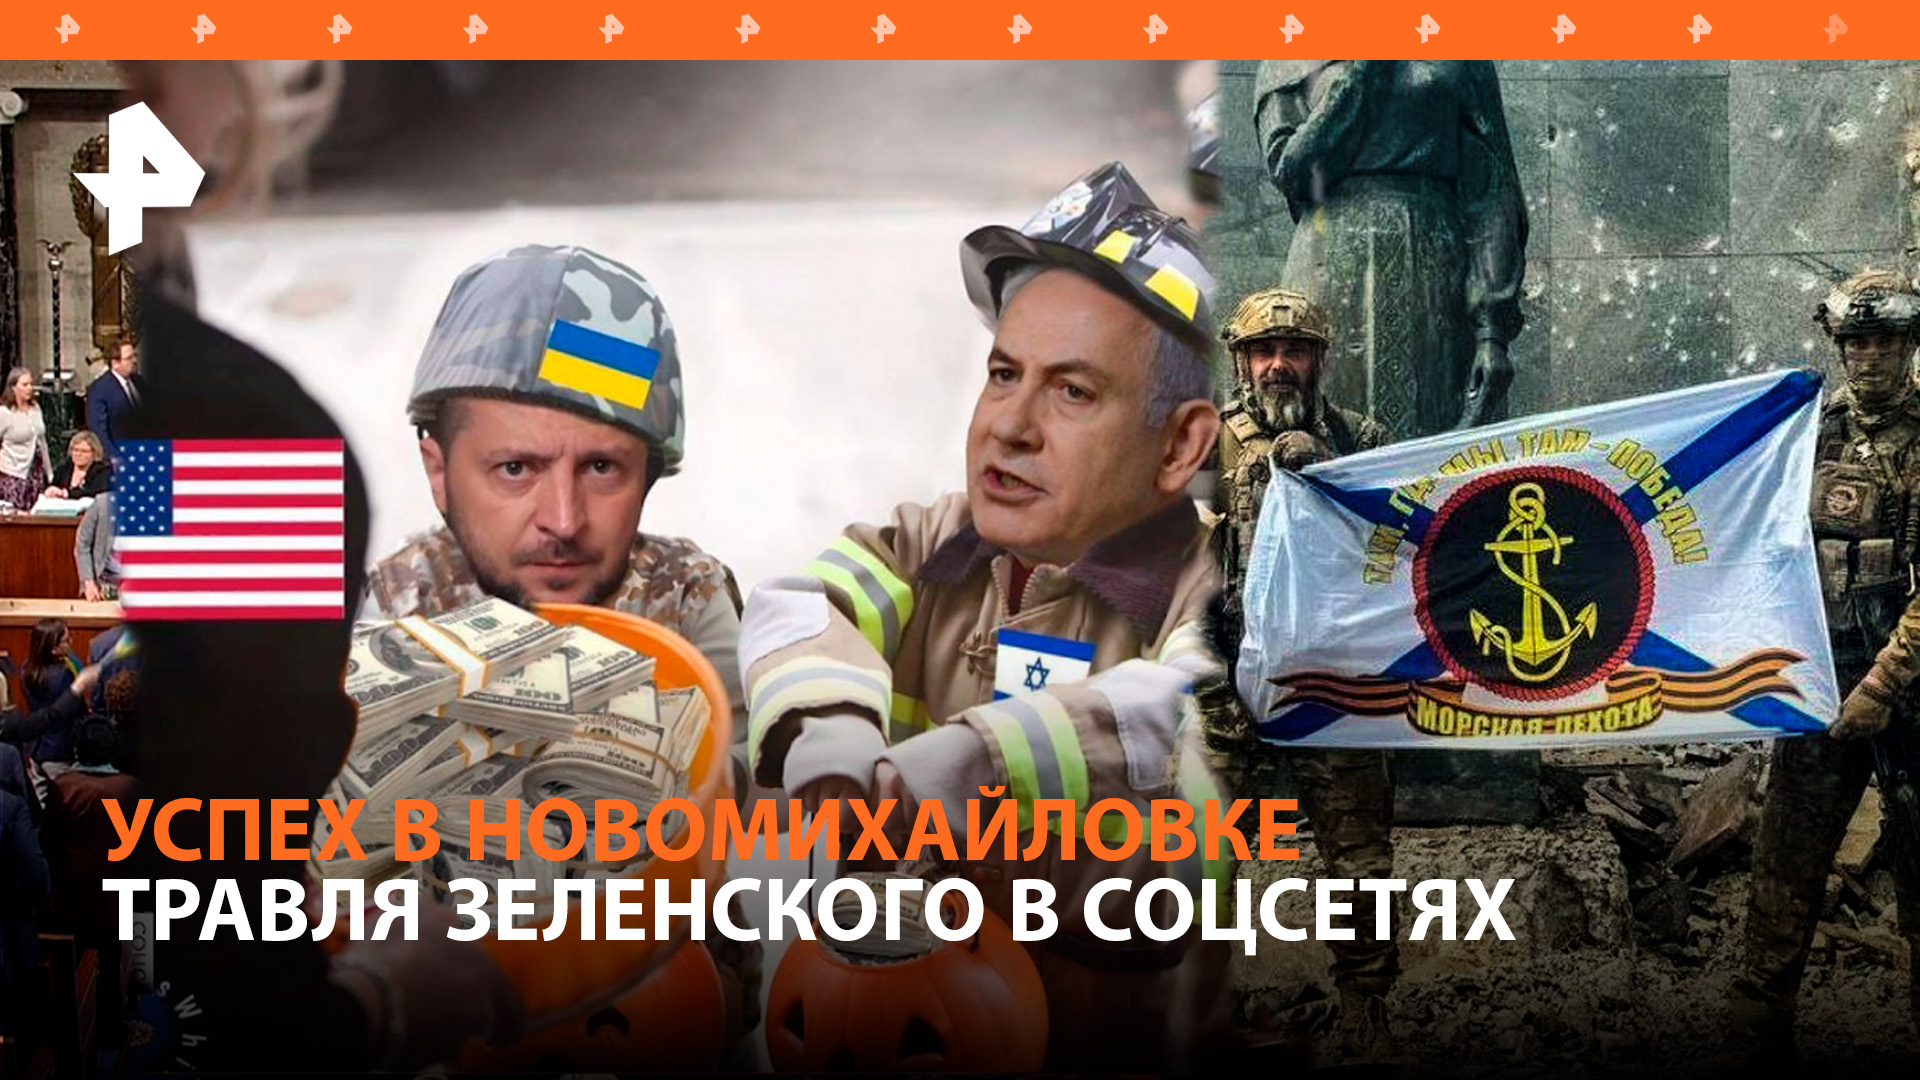 Конгресс США «зажал» деньги на Украину. Наш флаг в Новомихайловке. Травля Зеленского в соцсетях